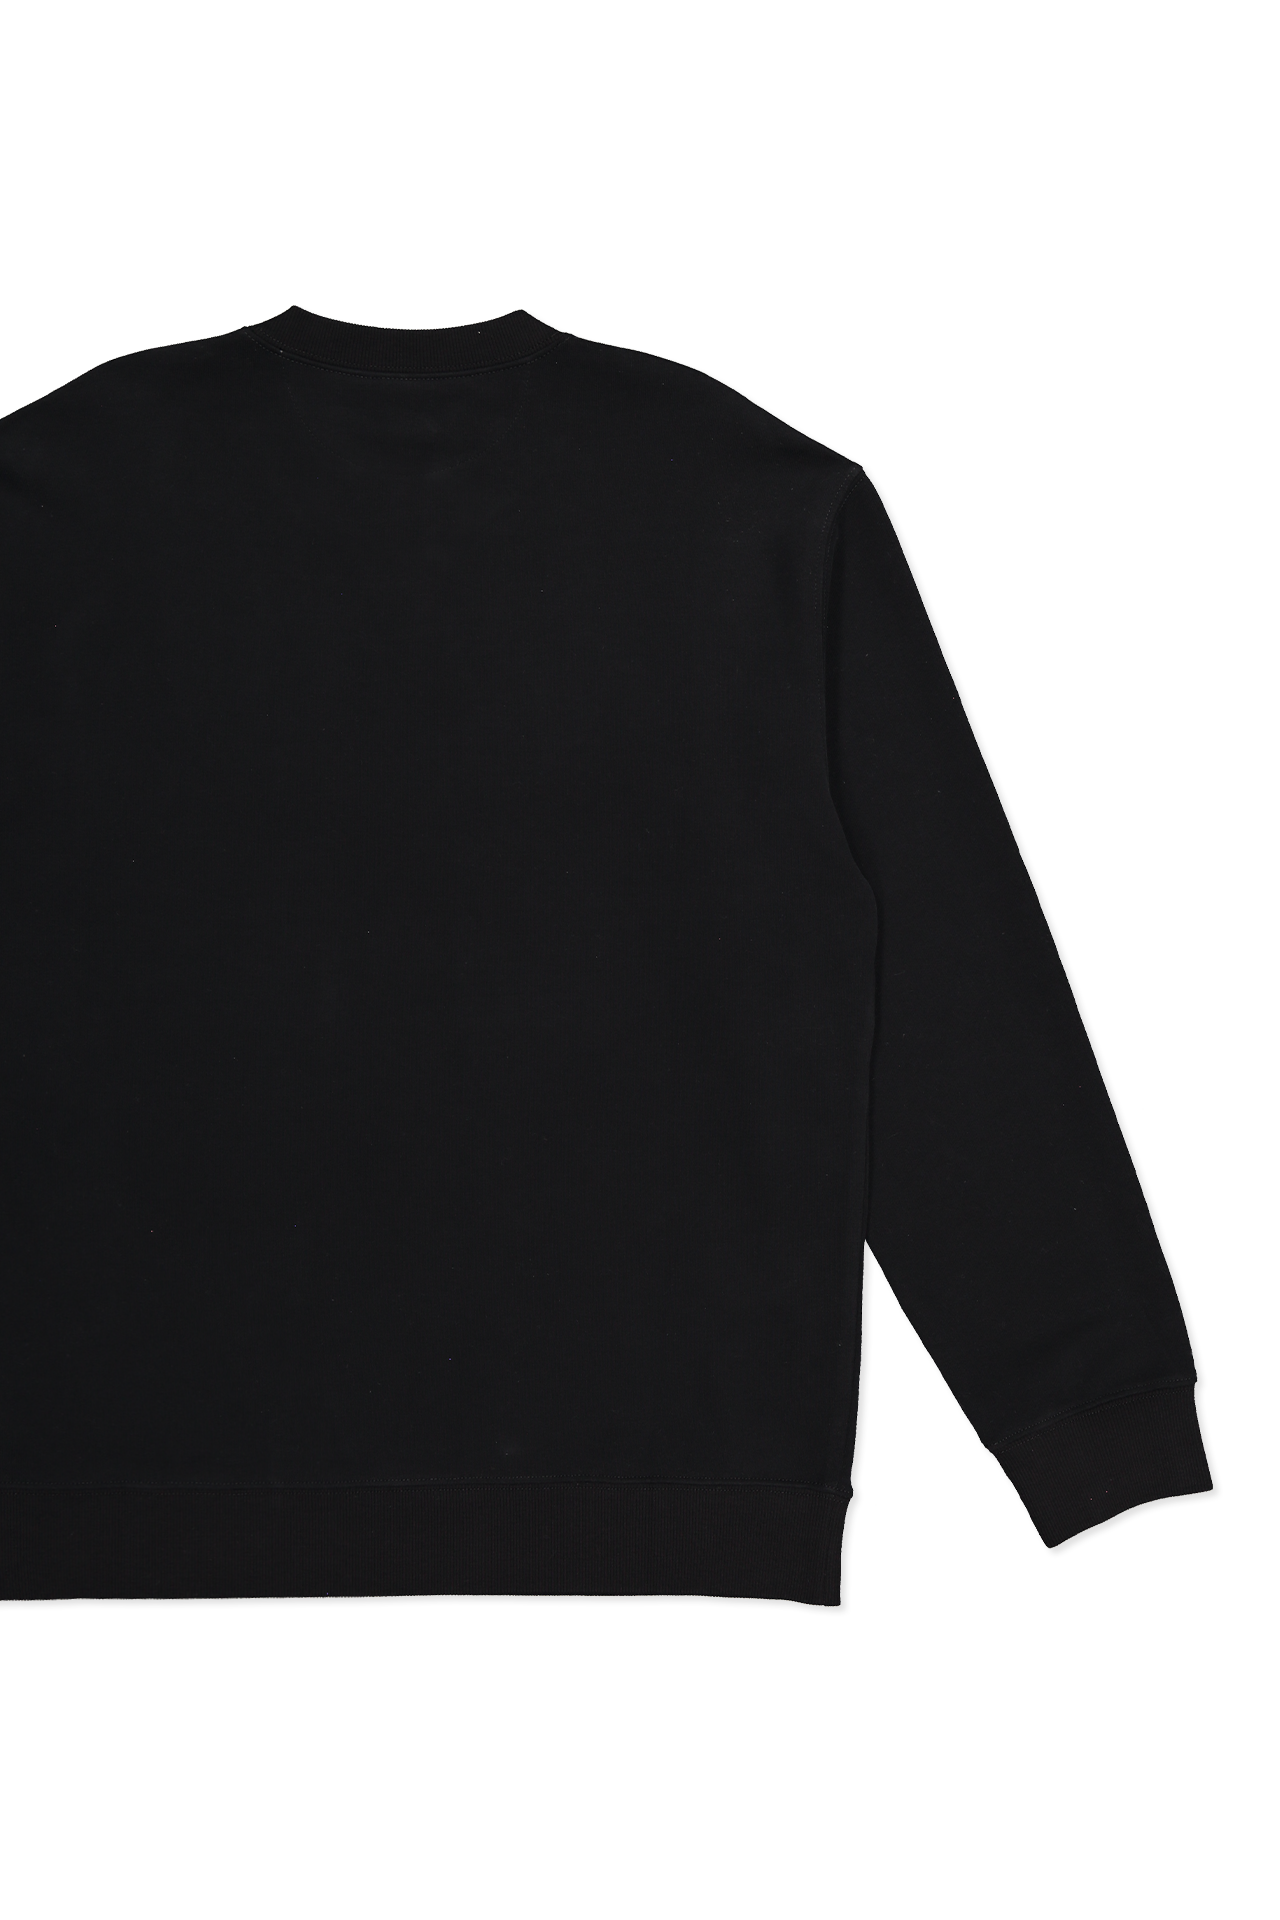 Crewneck Sweatshirt (7162957561971)